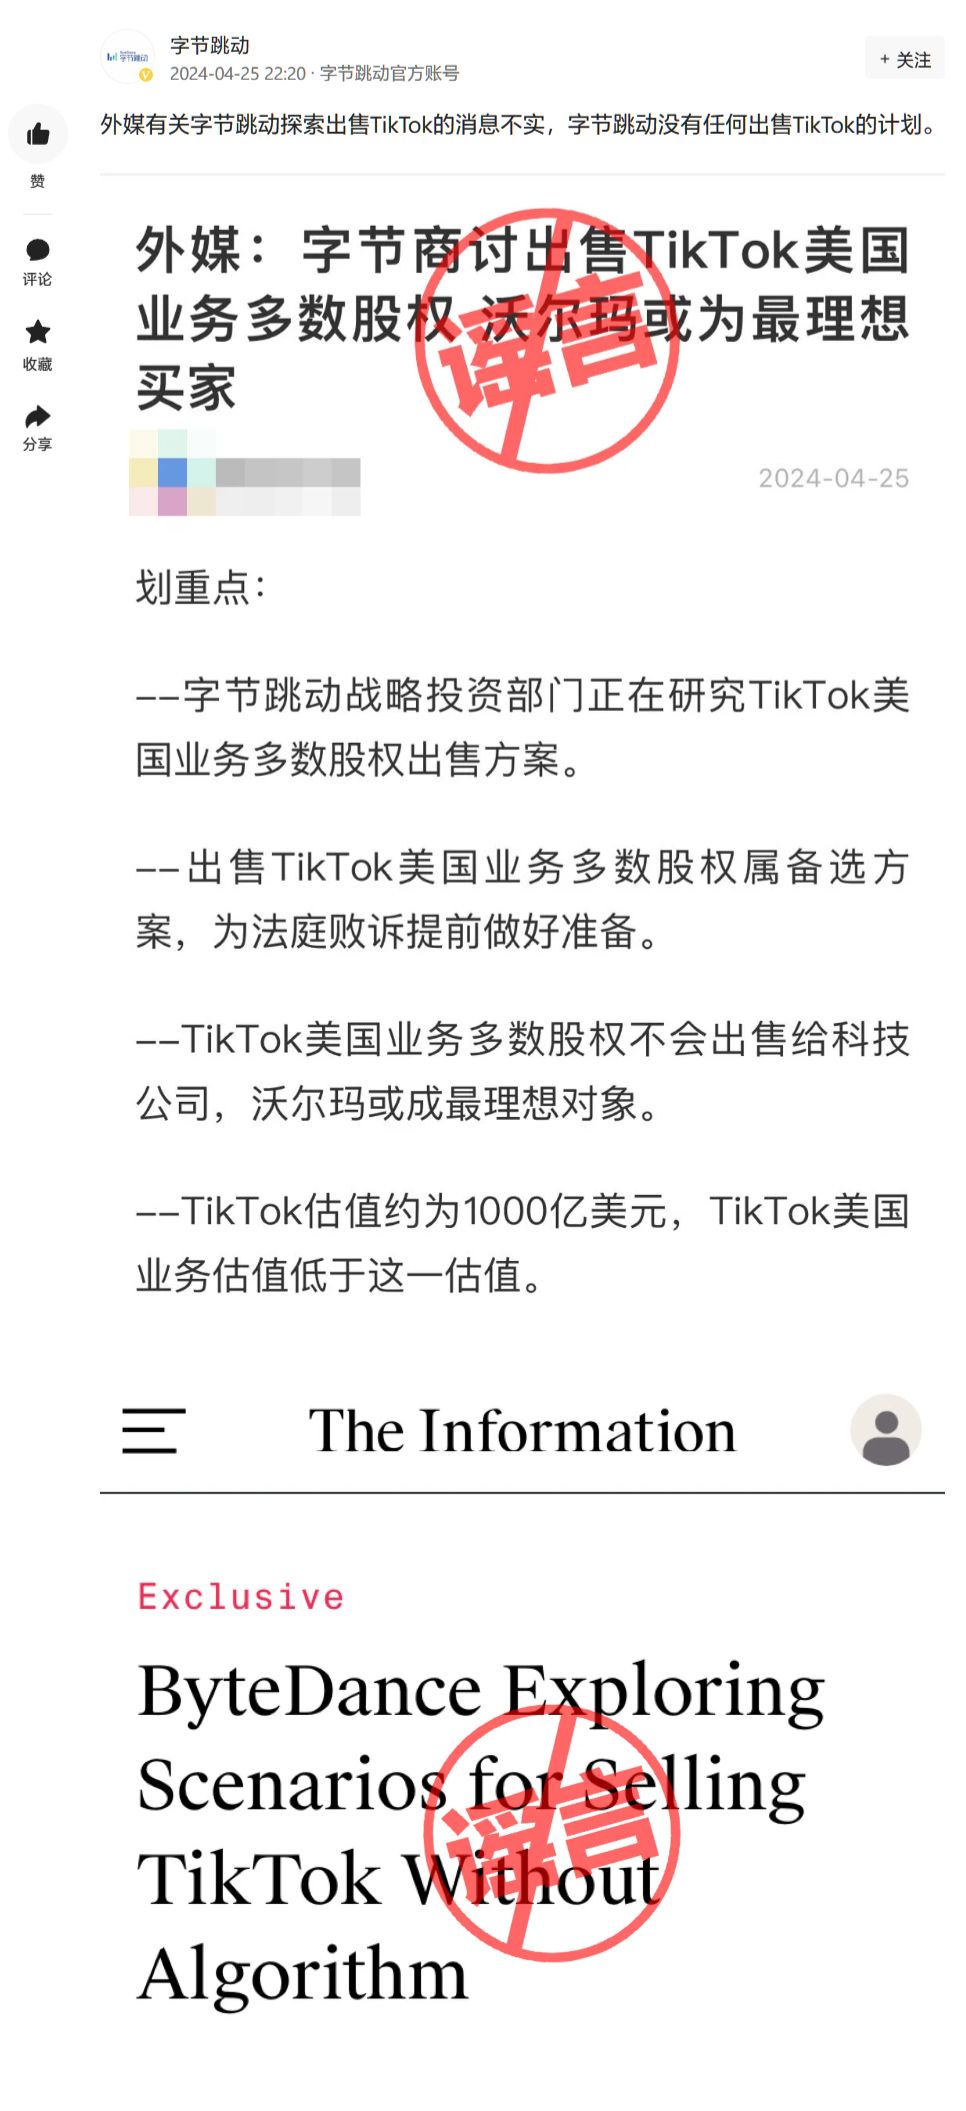 字节跳动称公司探索出售TikTok消息不实 无任何相关计划